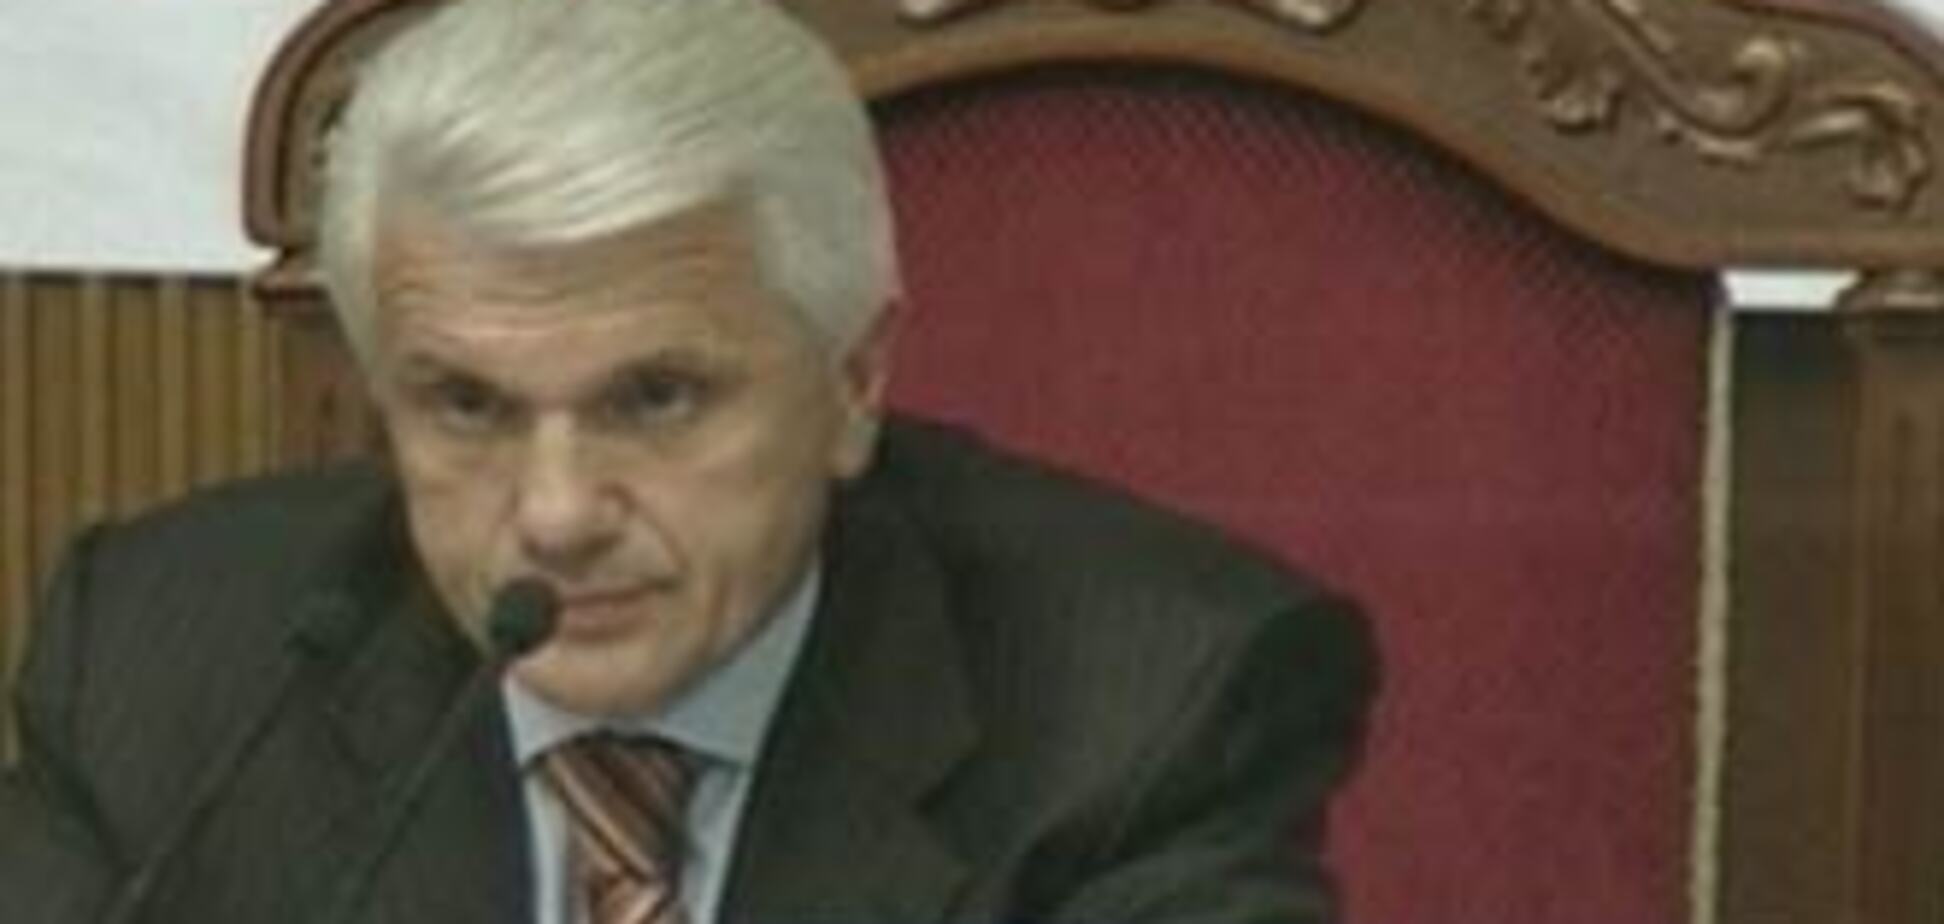 Литвин звинуватив Тимошенко у великій афері